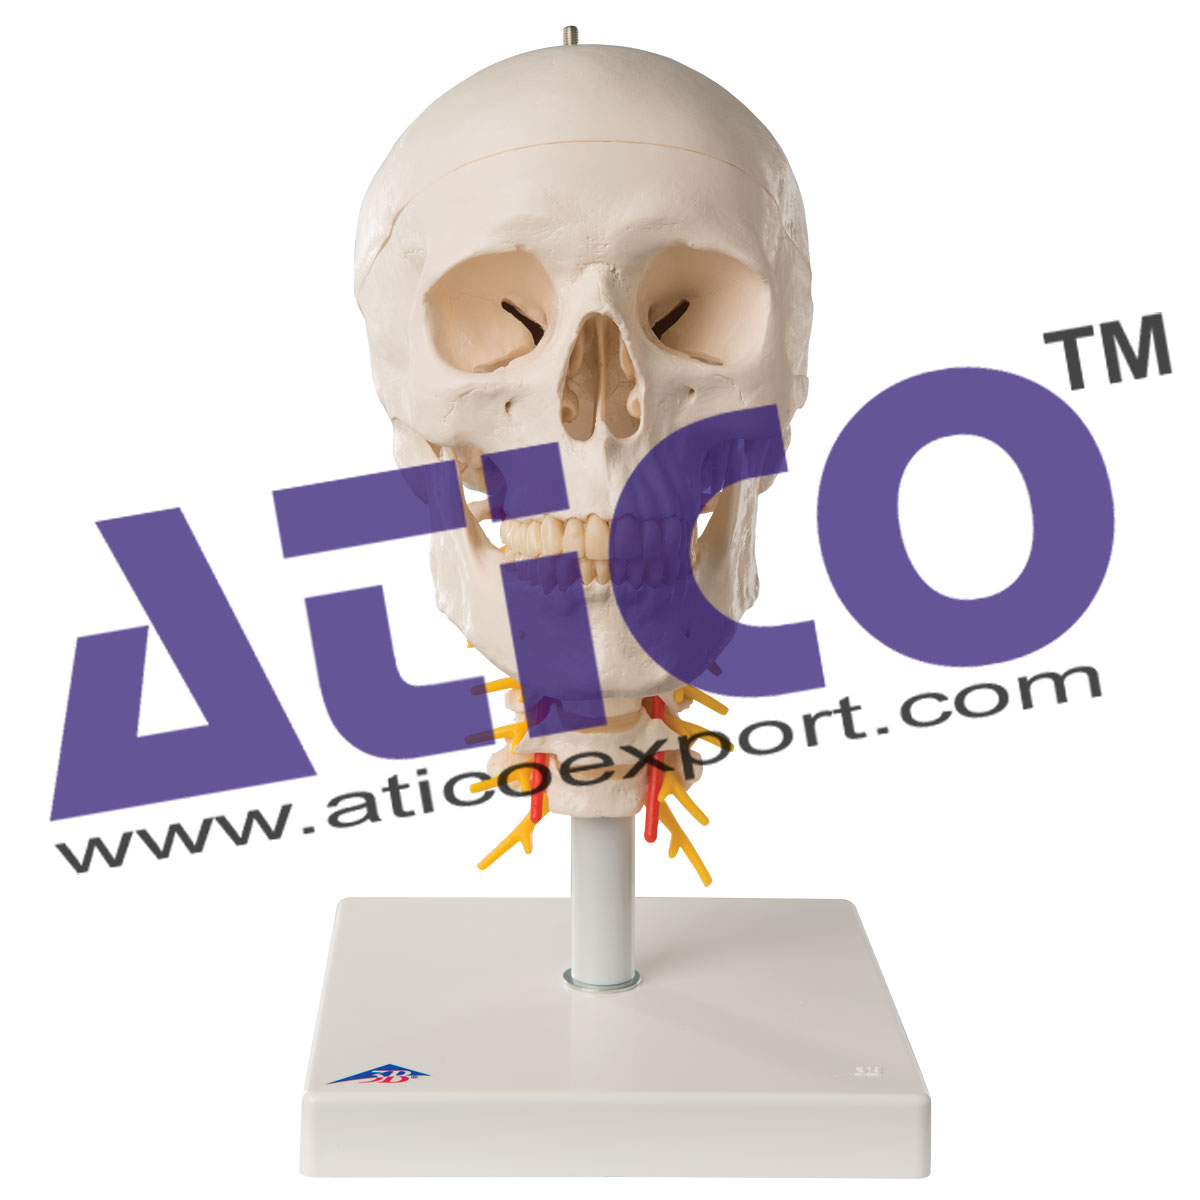 Human Skull Model With Cervical Spine